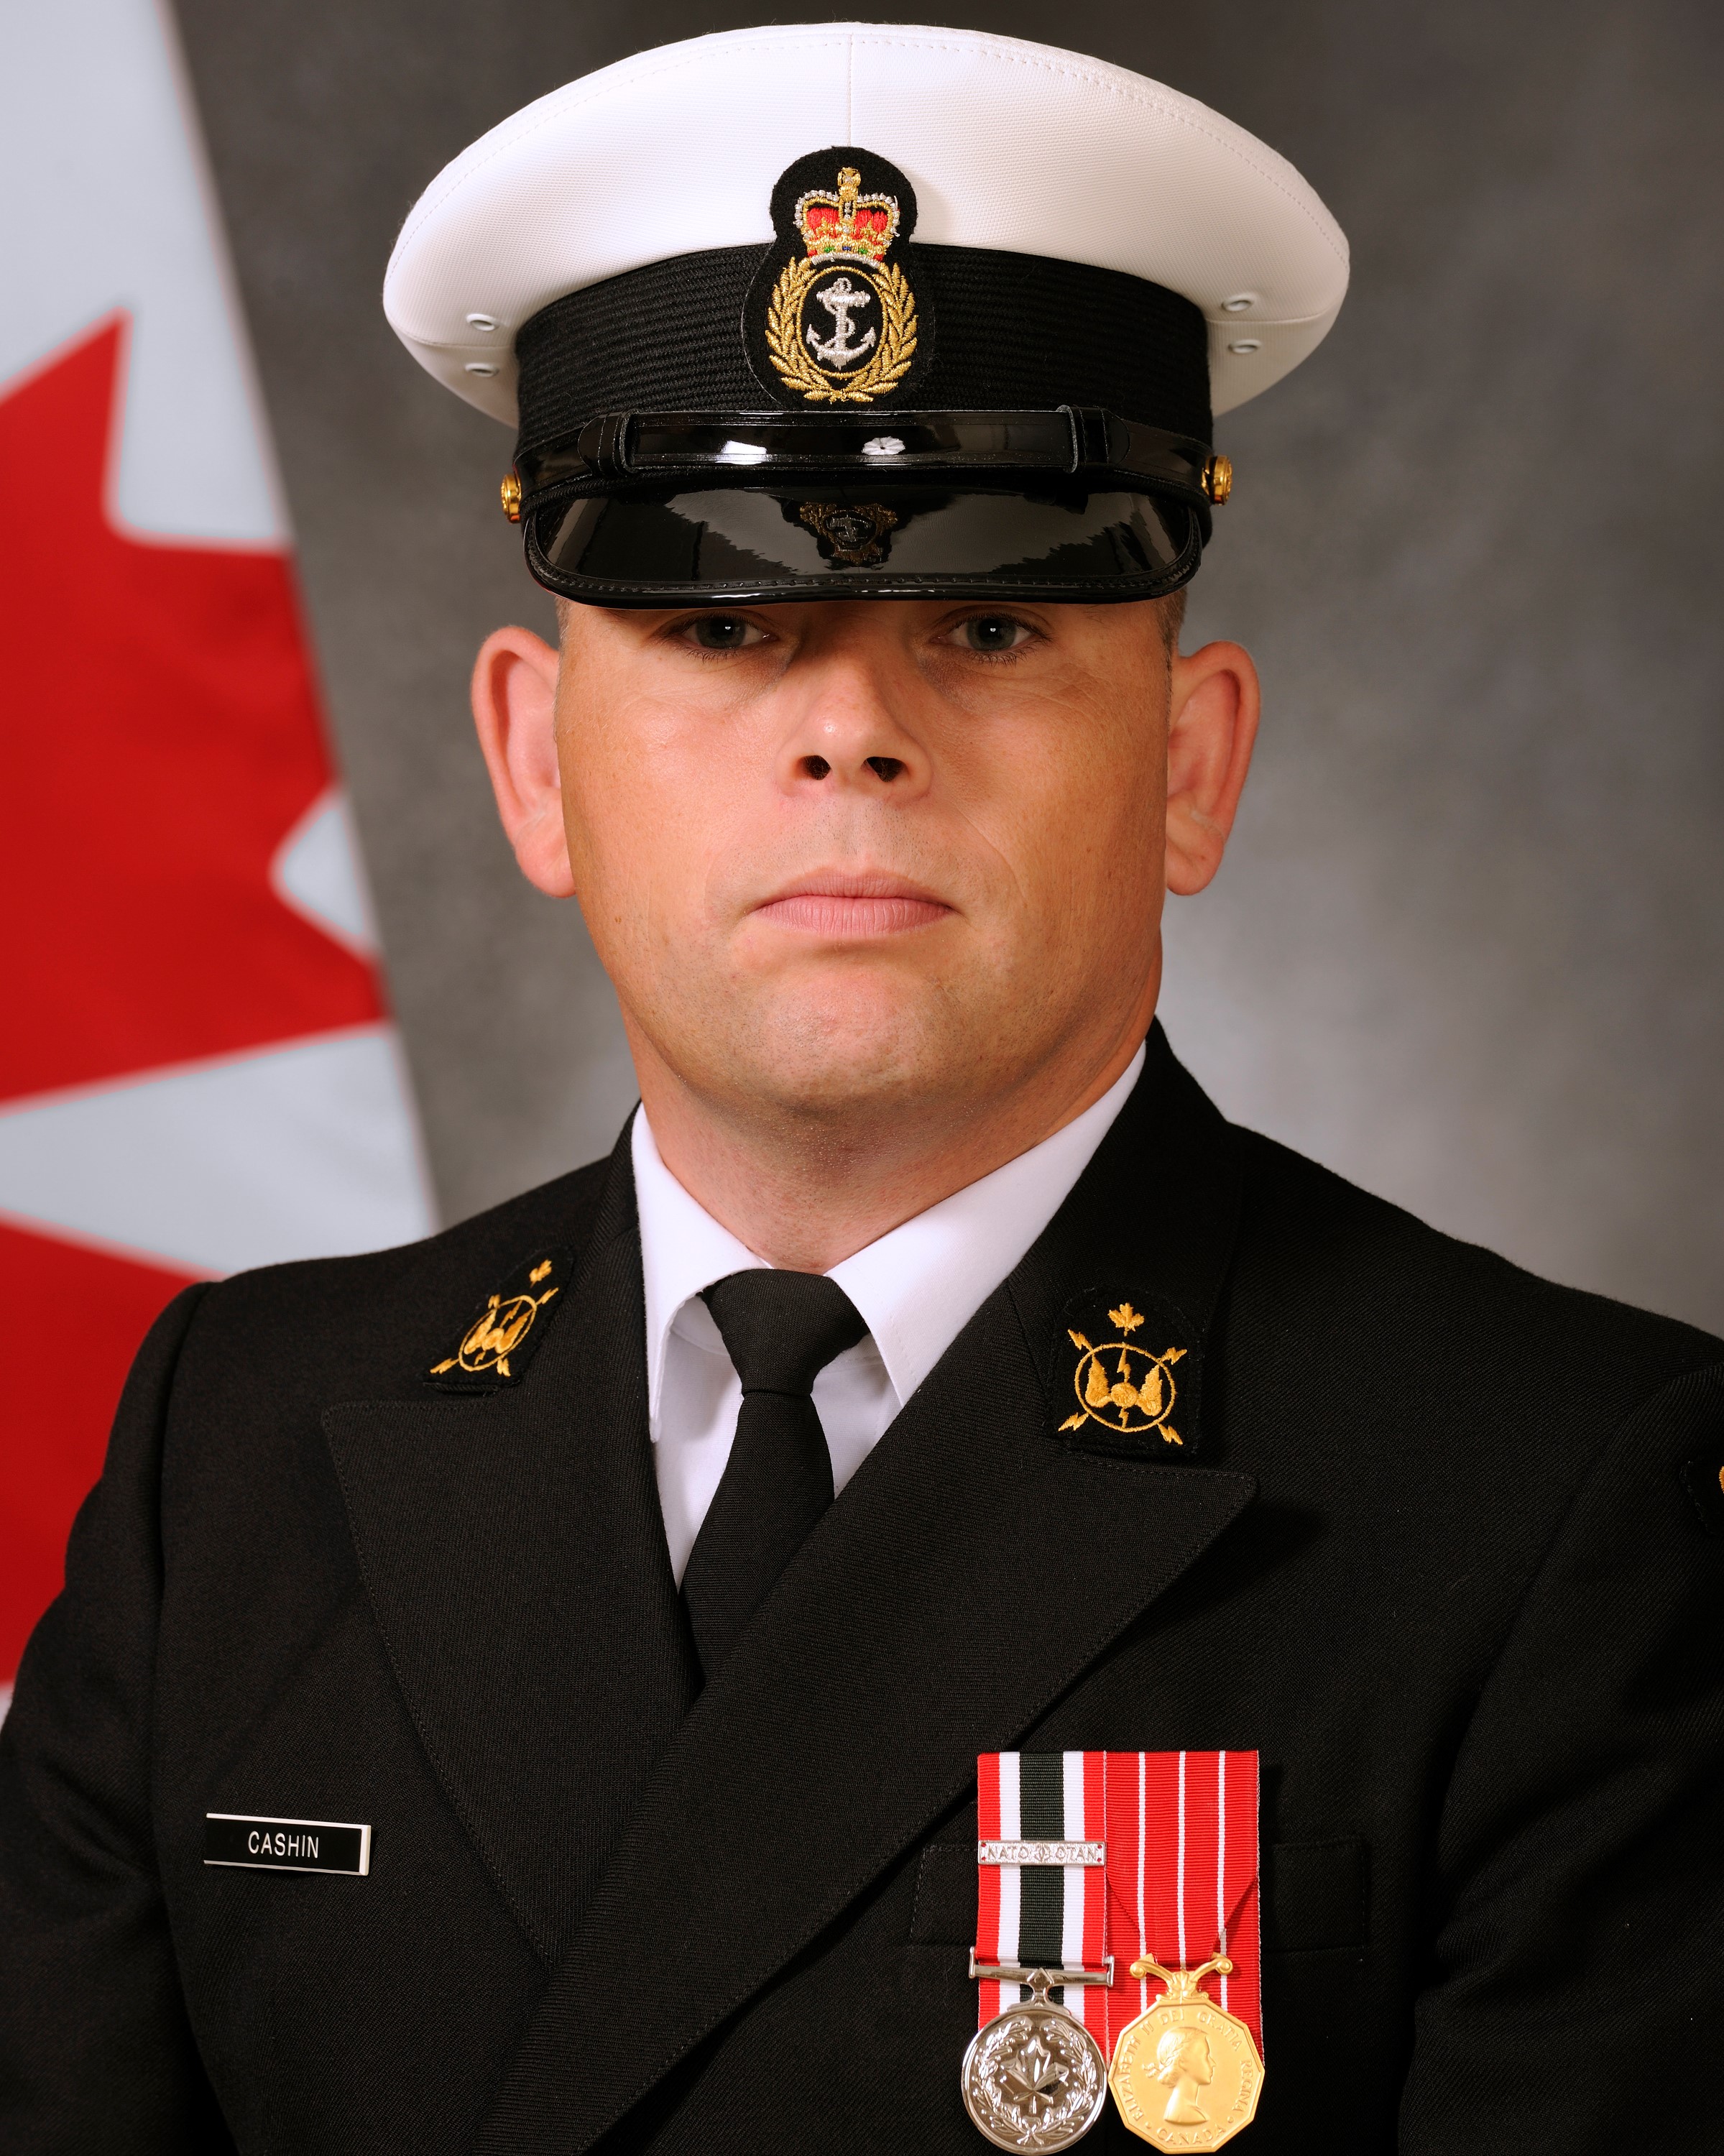 Petty Officier, 1st class Martin Cashin